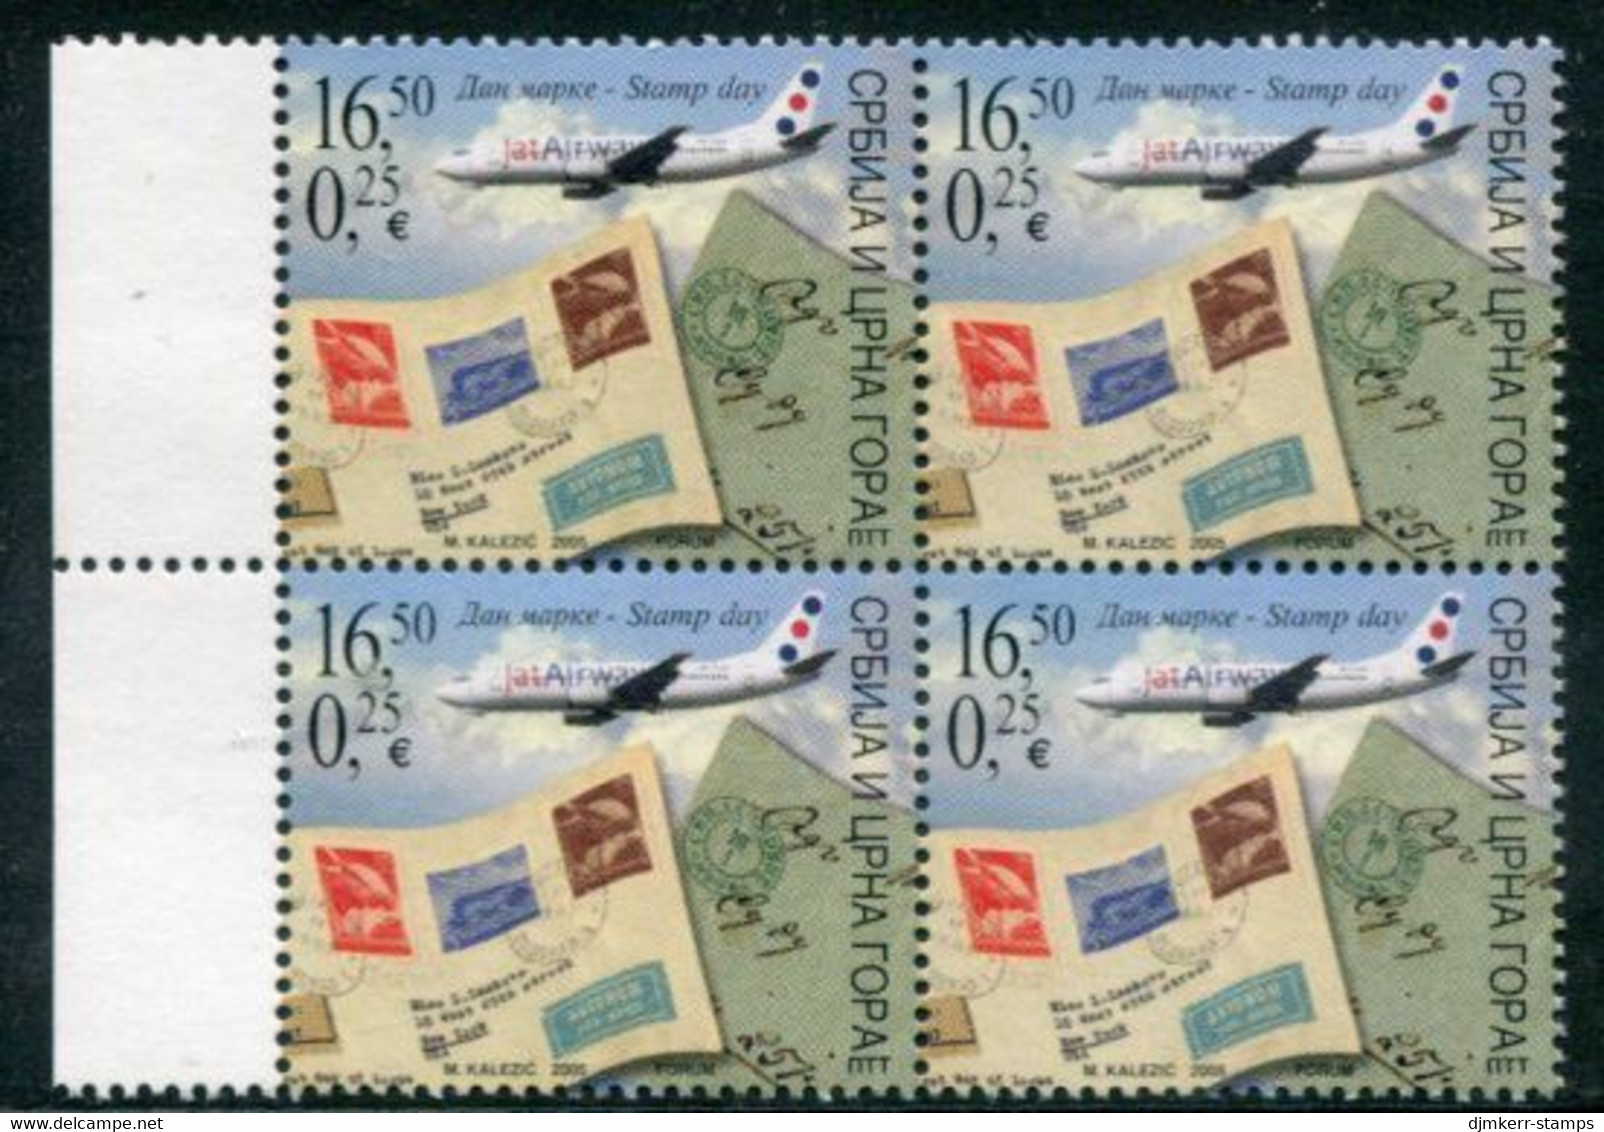 YUGOSLAVIA (Serbia & Montenegro)  2005 Stamp Day Block Of 4 MNH / **.  Michel 3295 - Ungebraucht